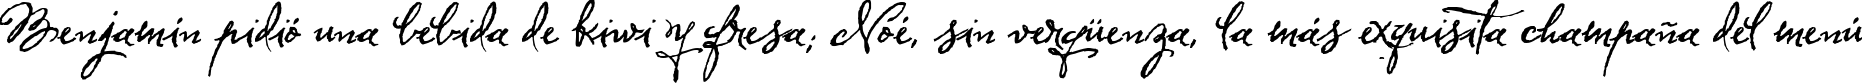 Пример написания шрифтом Herencia текста на испанском